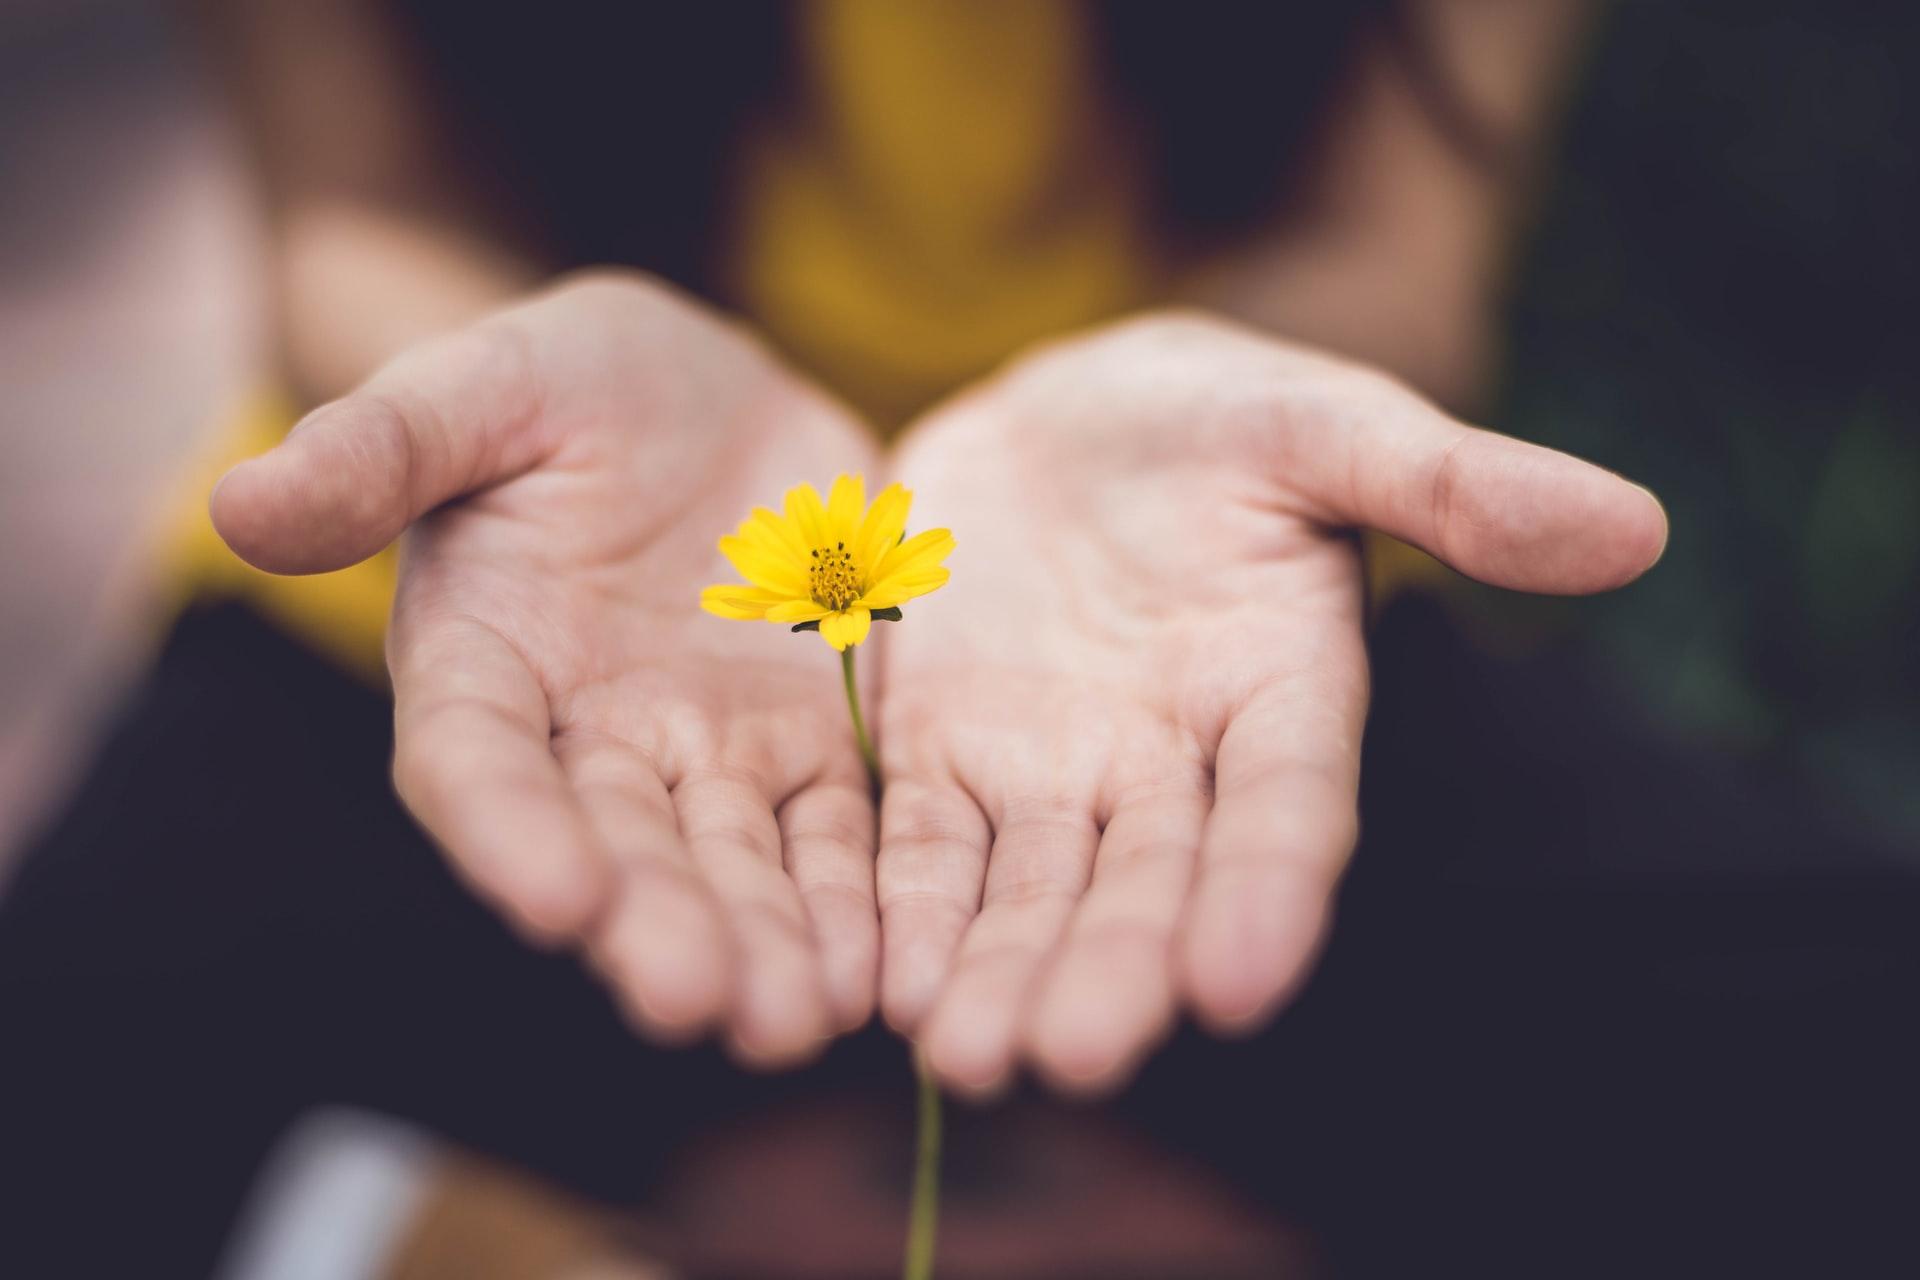 Man sieht ein geöffnetes Händepaar, welches eine kleine gelbe Blume zart umfängt.